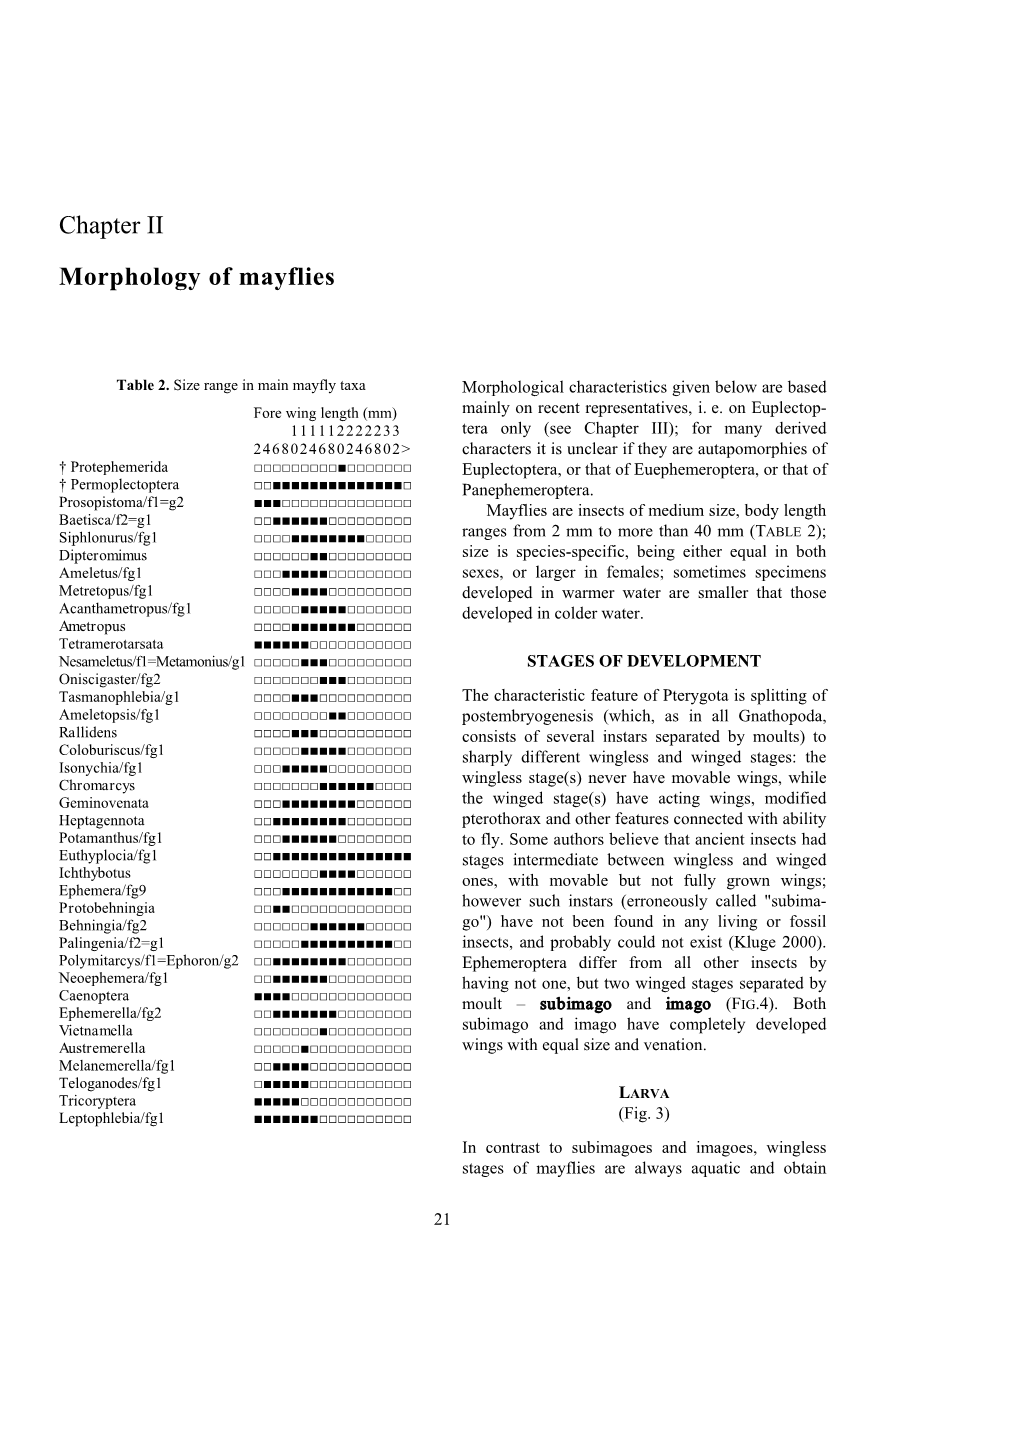 Chapter II Morphology of Mayflies